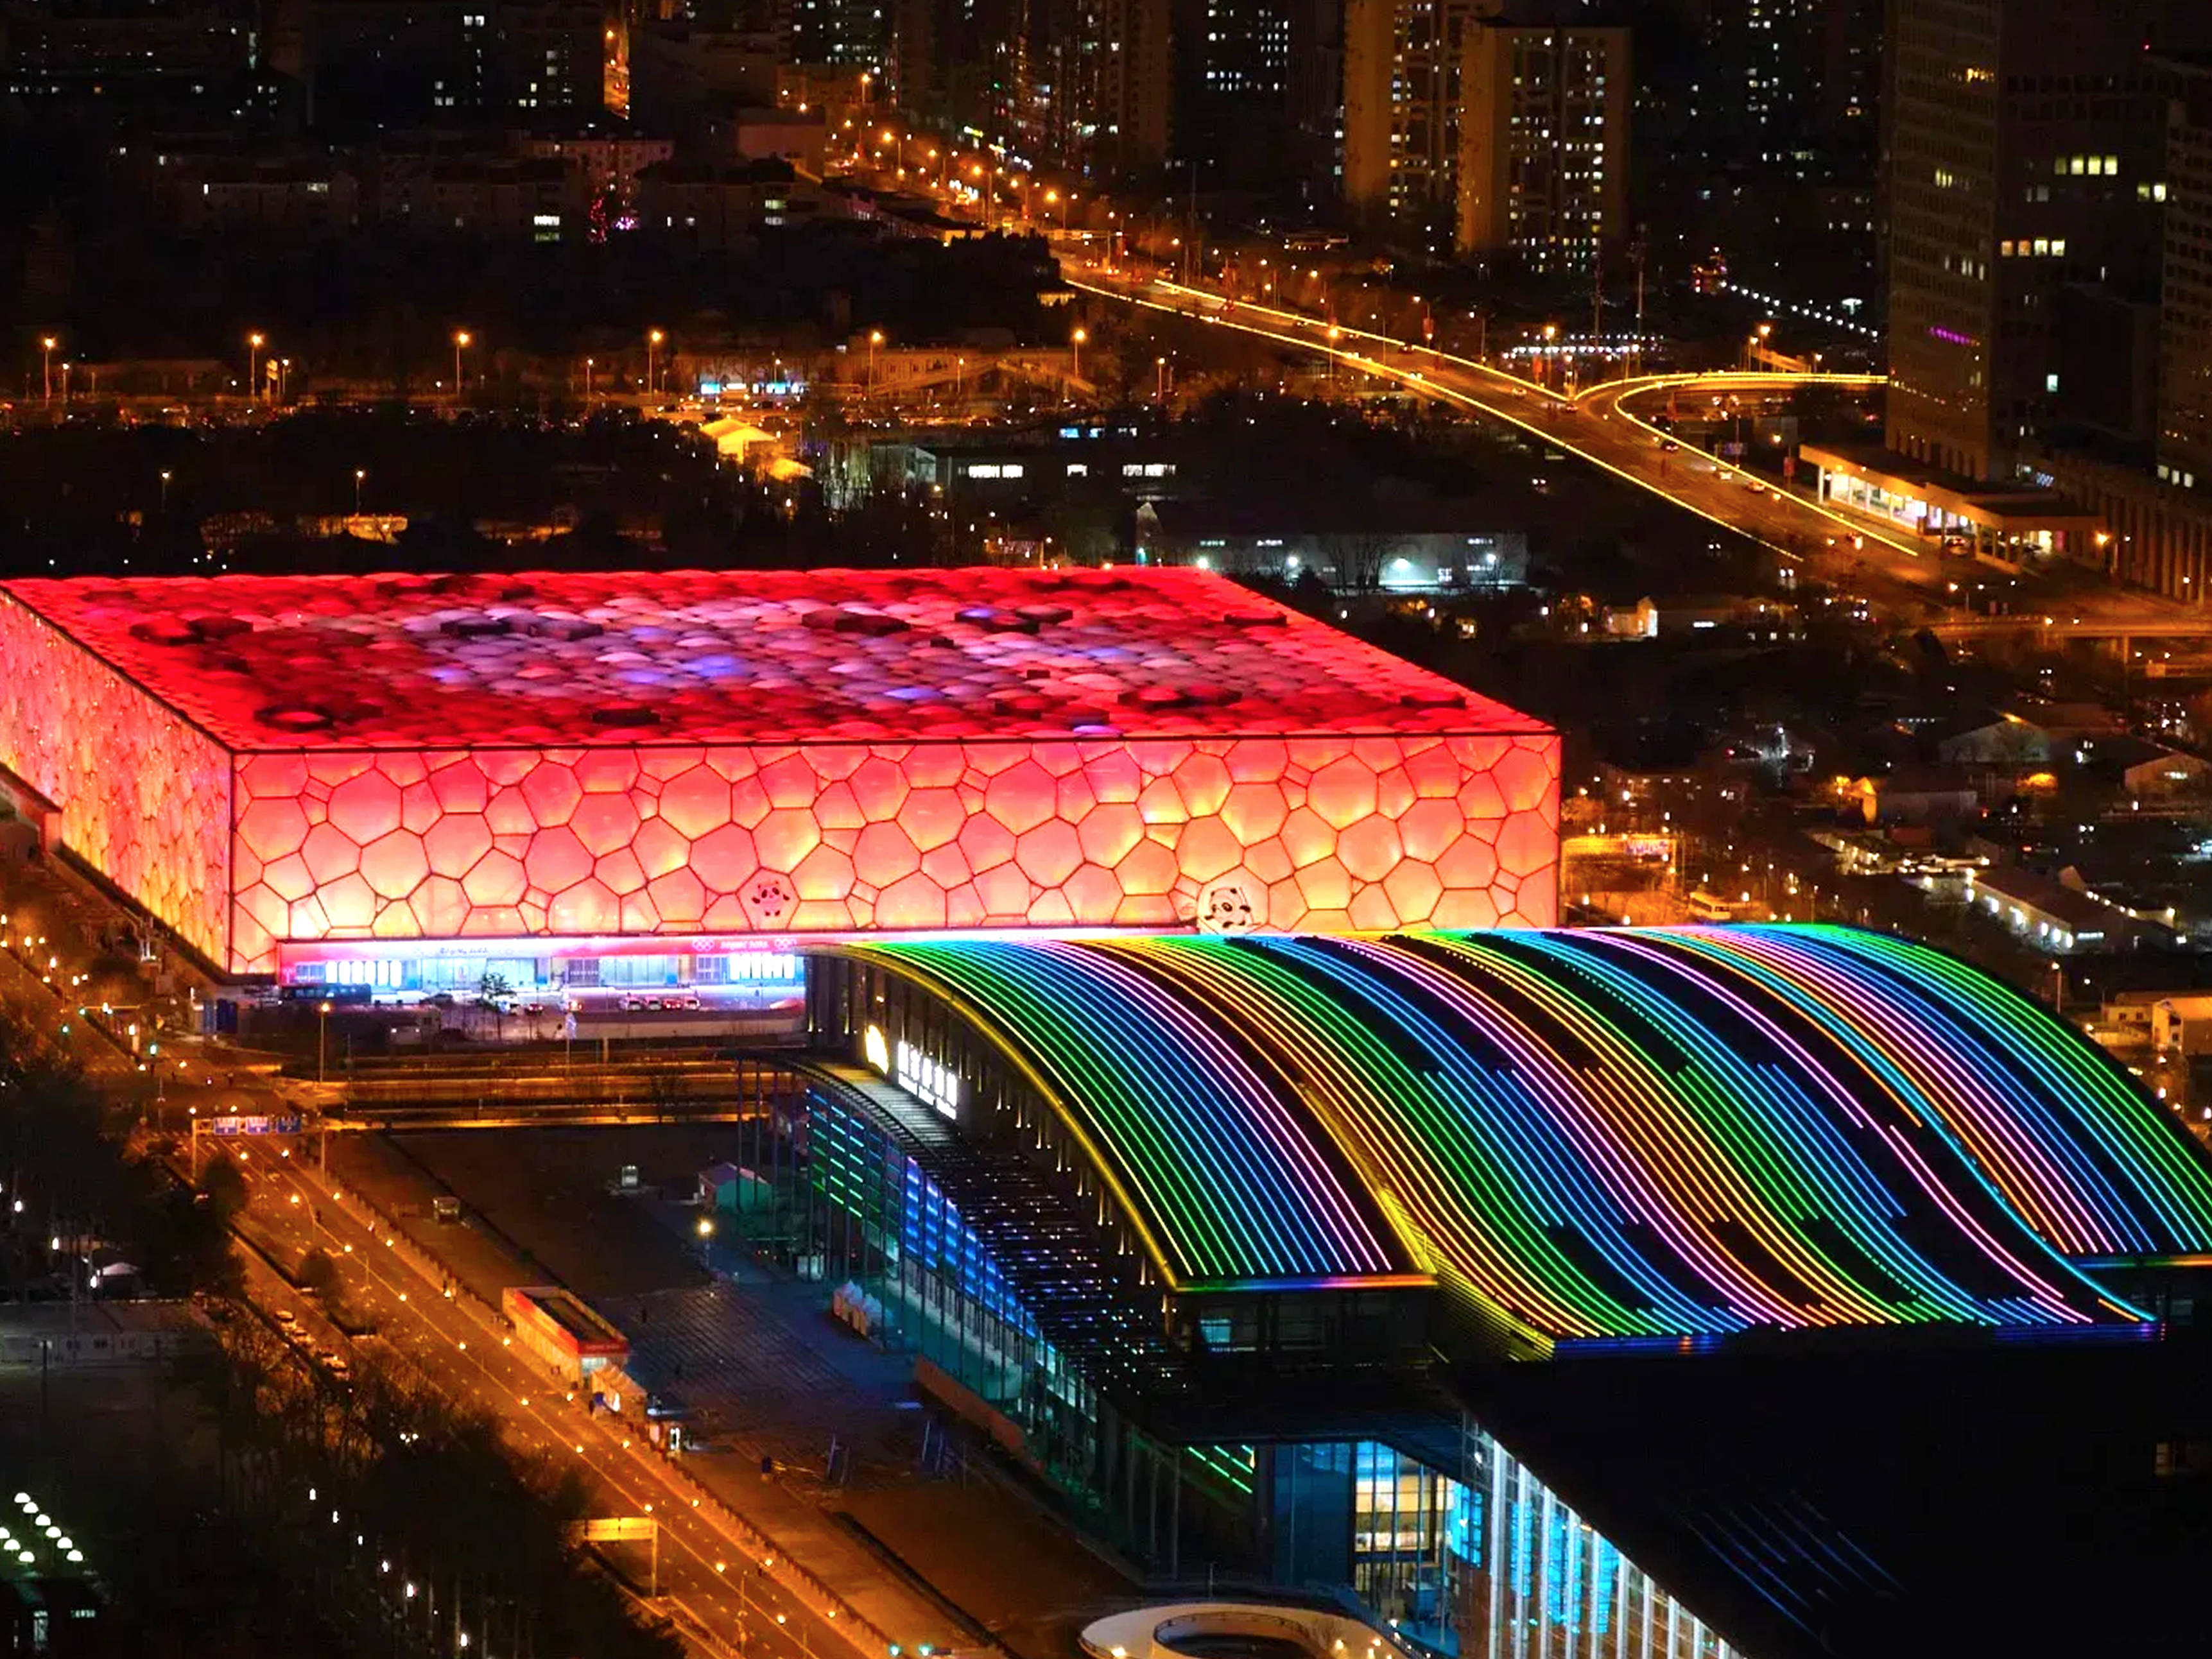 北京冬奥会水立方图片